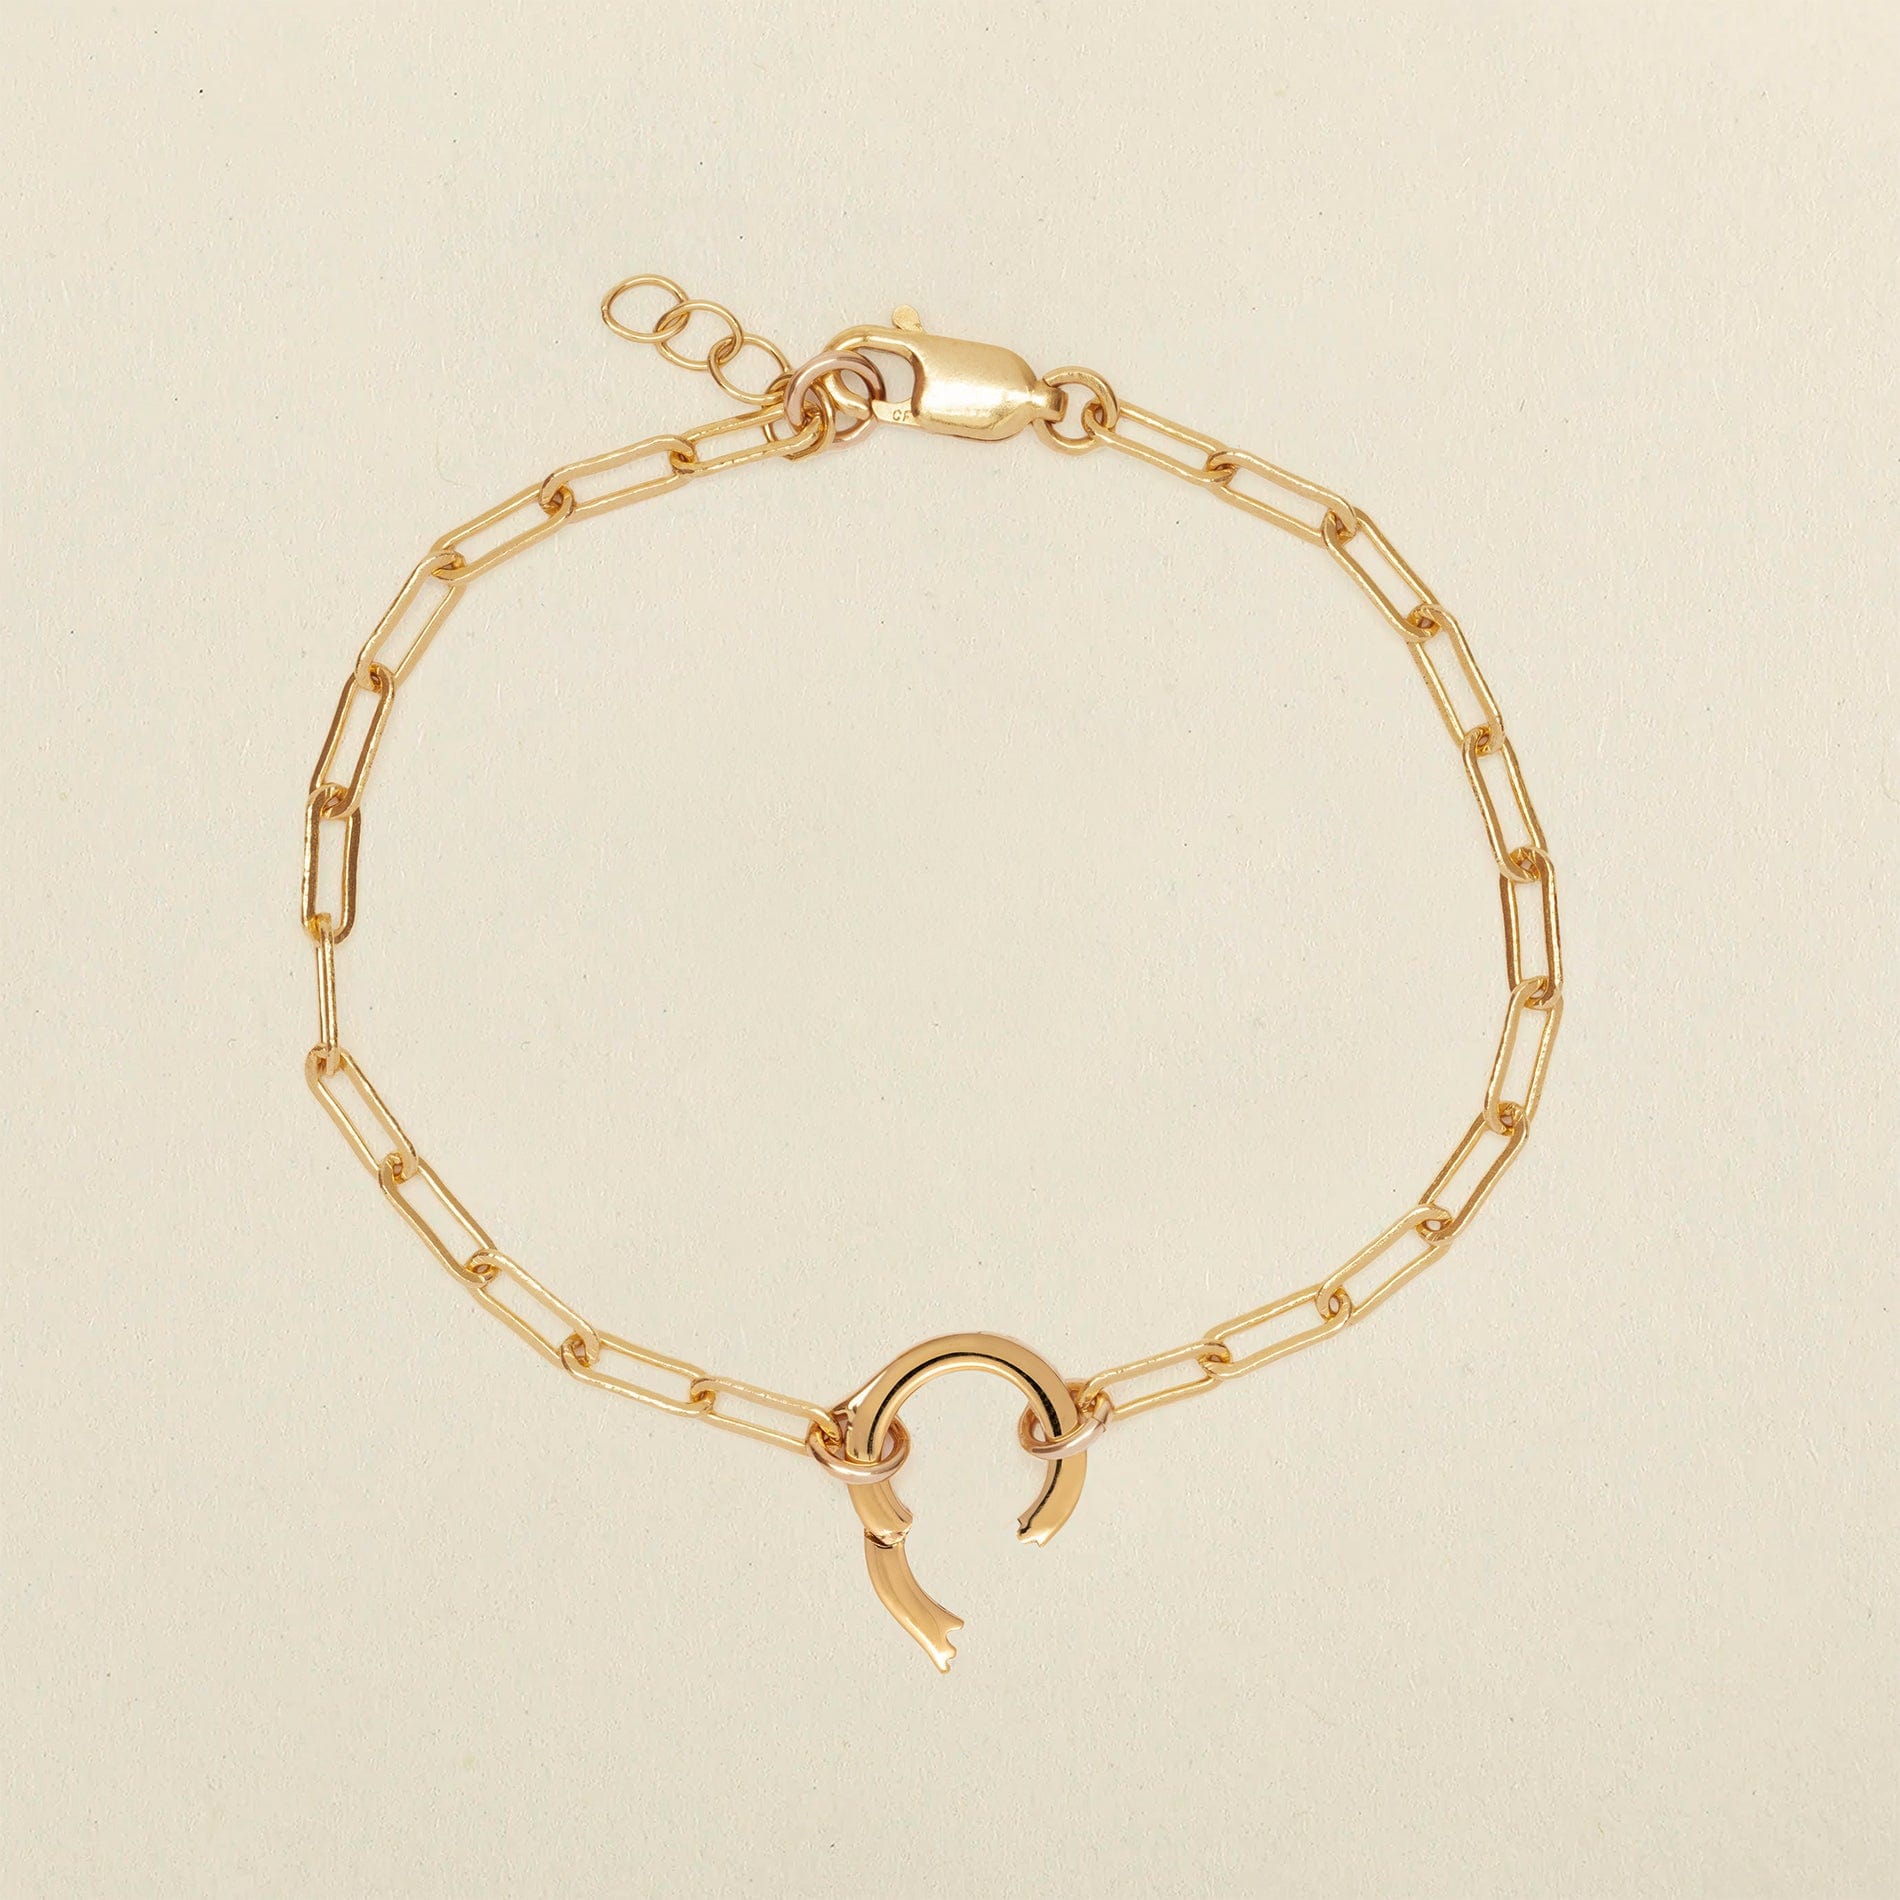 Poppy 14k Gold Charm Bracelet, Paperclip Charm Bracelet